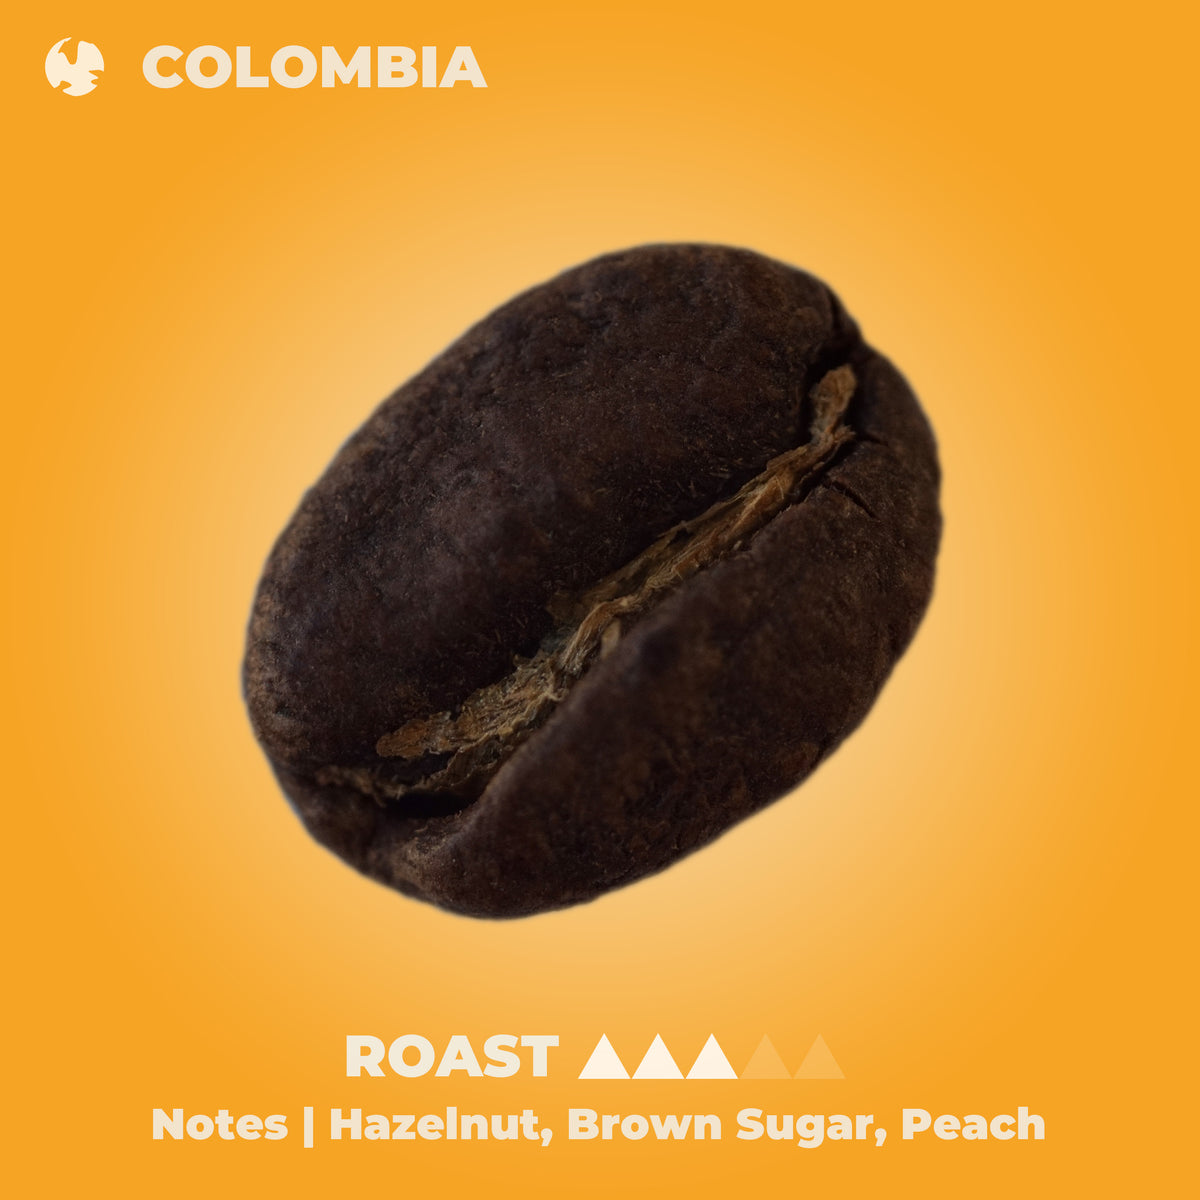 Colombian Medellin Coffee